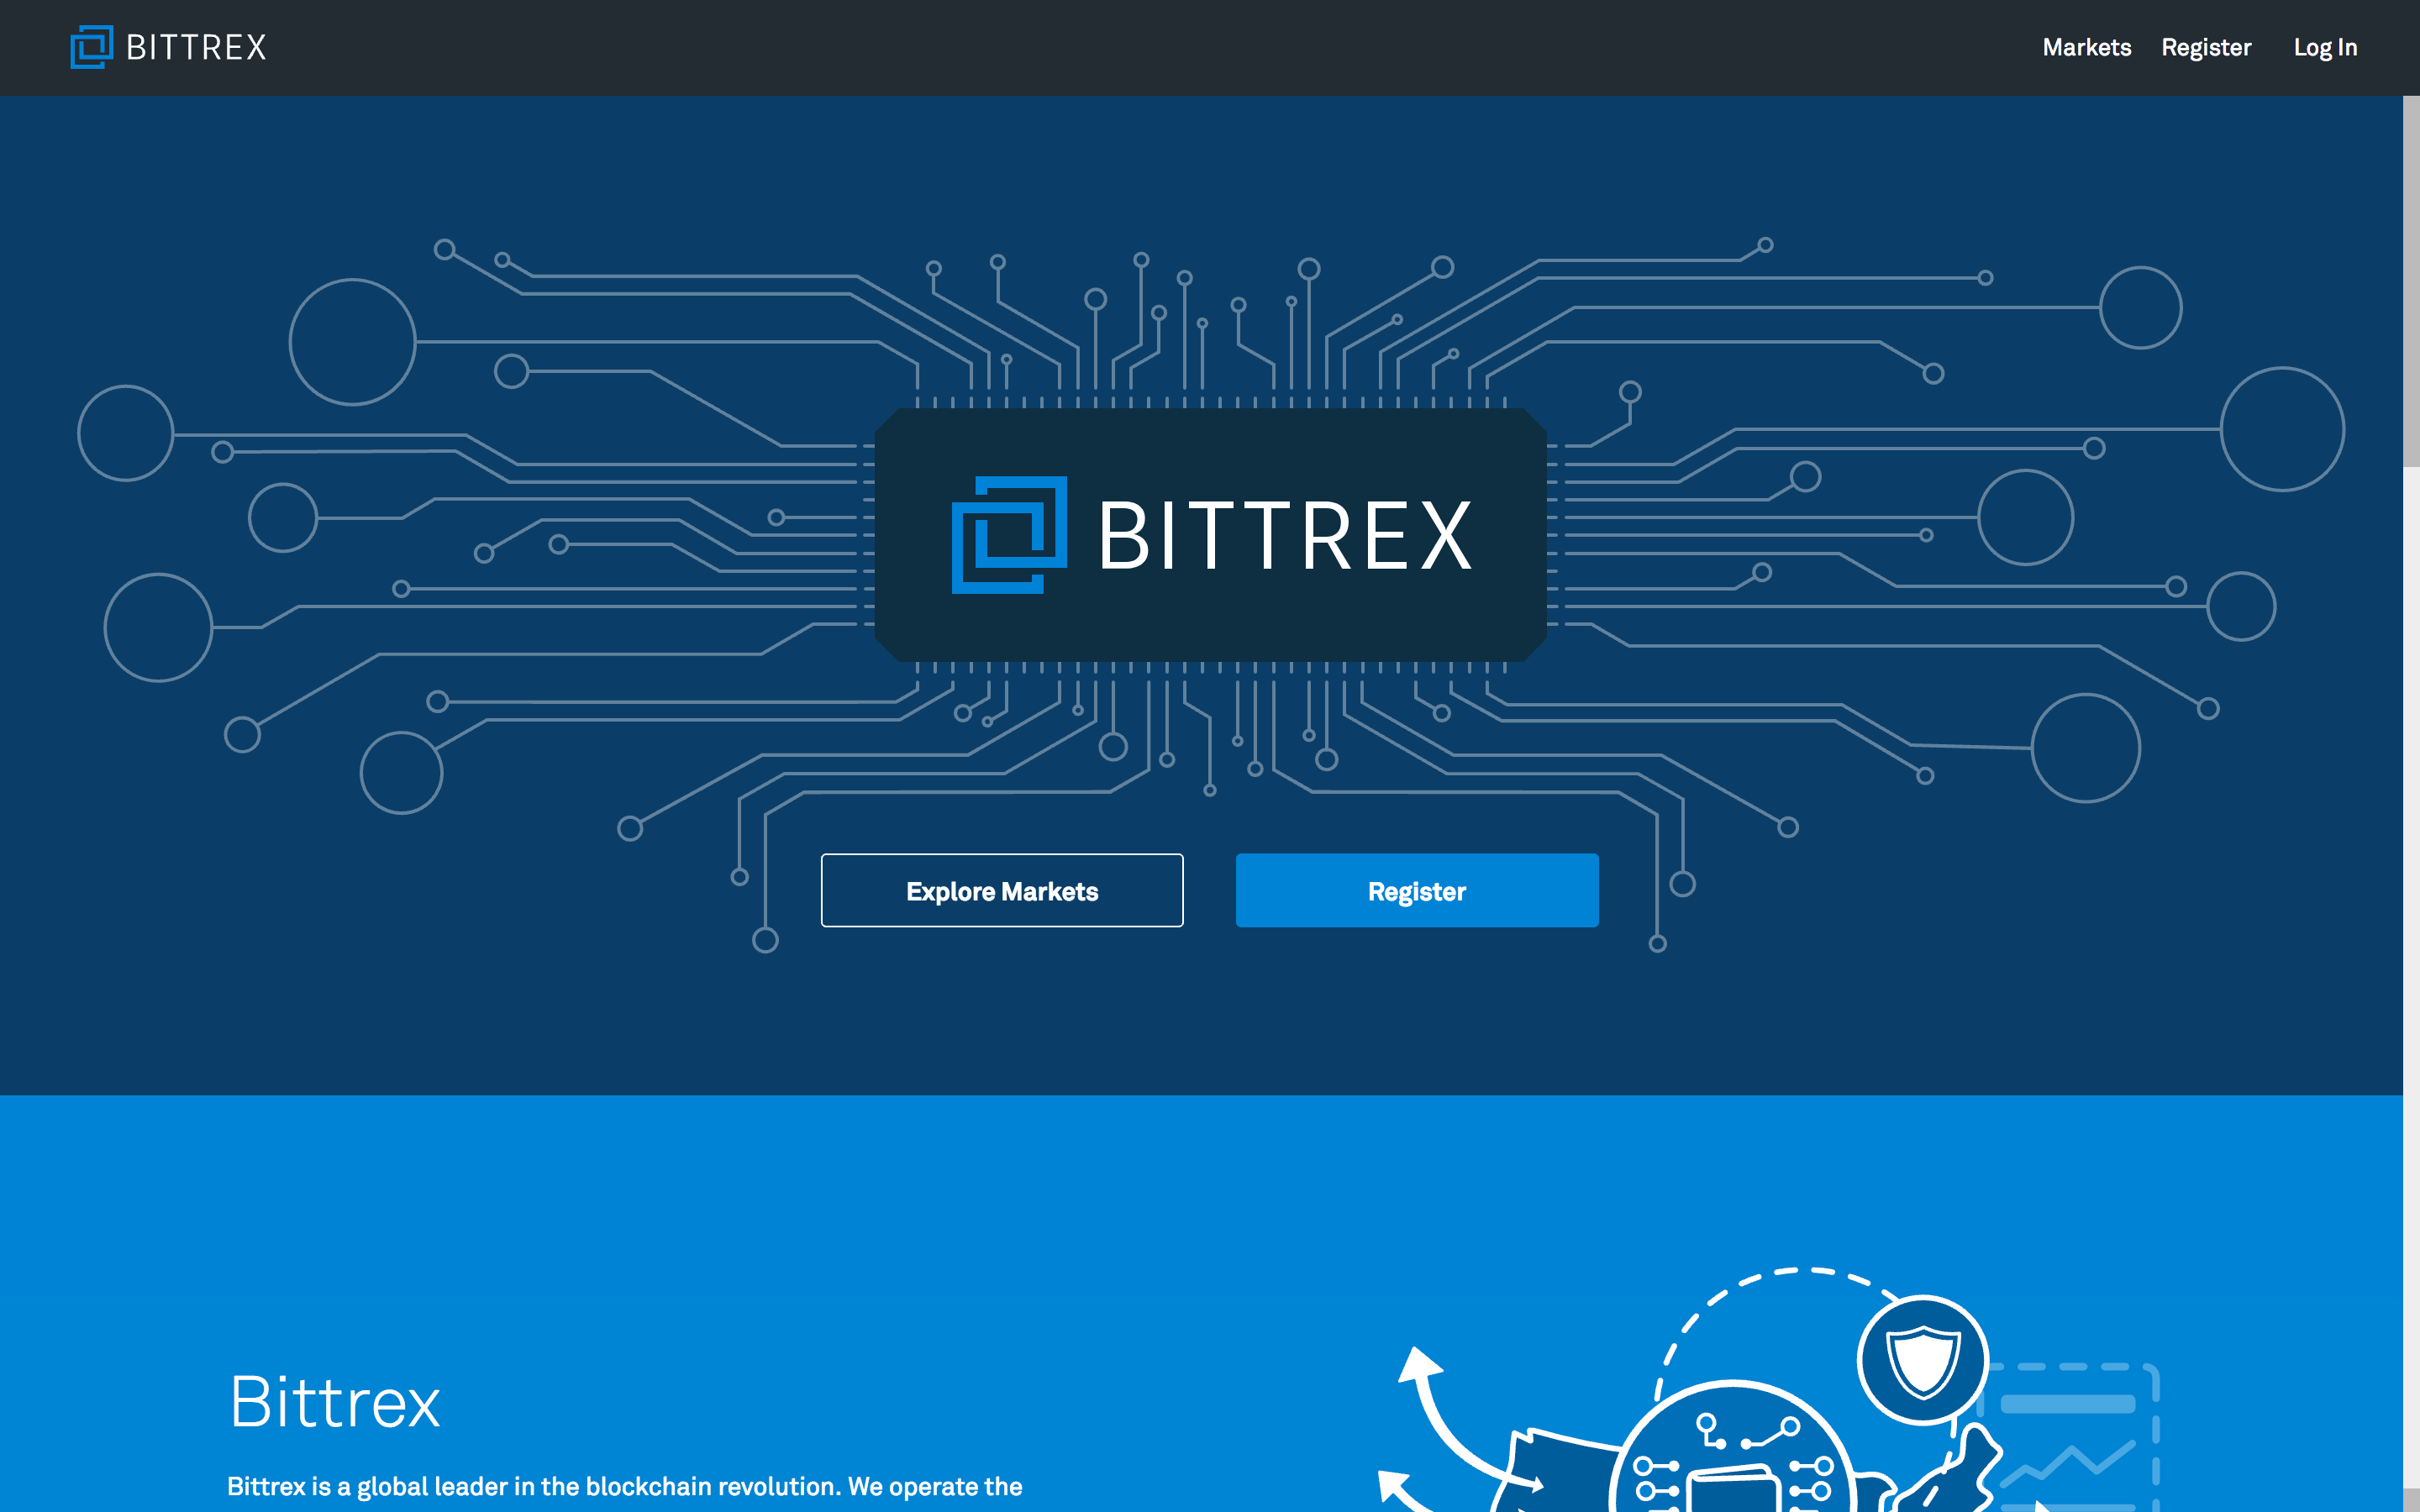 How to create and setup Bittrex API key